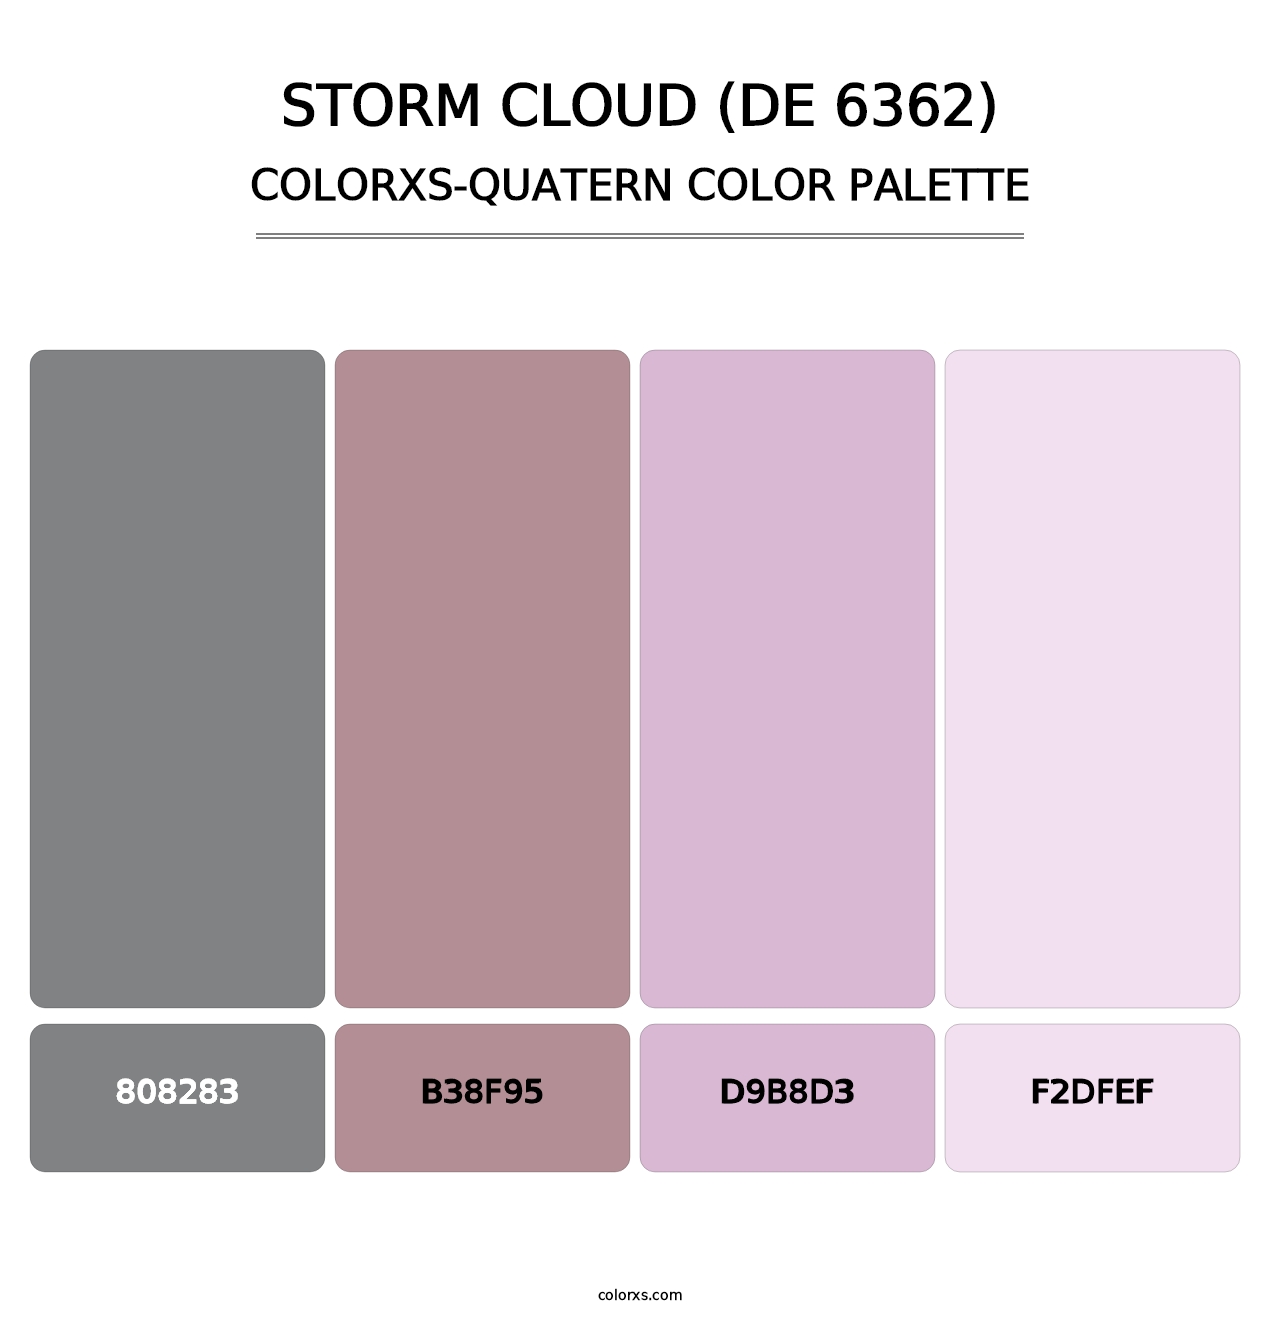 Storm Cloud (DE 6362) - Colorxs Quatern Palette